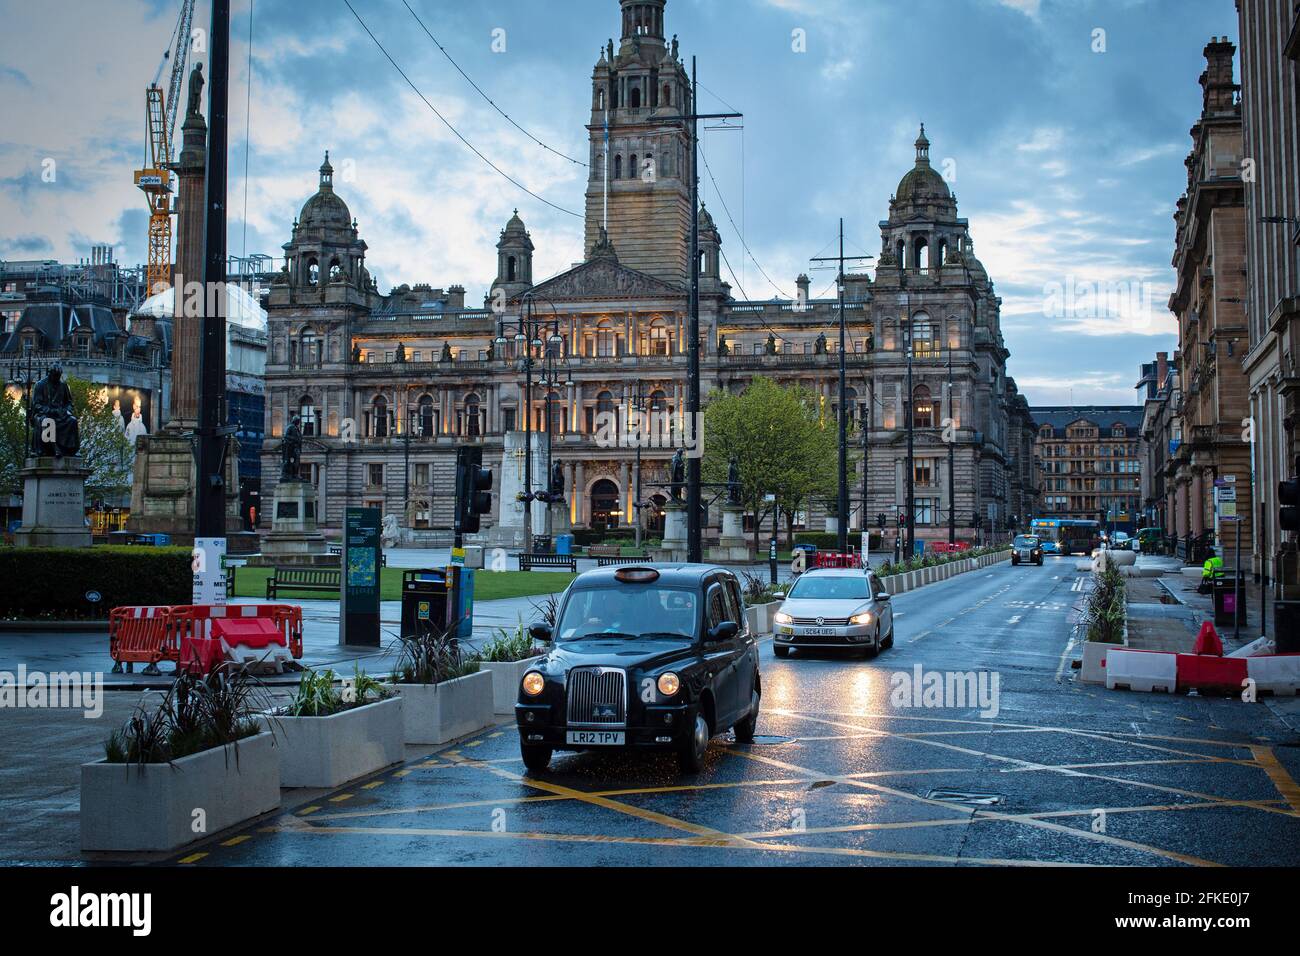 Glasgow City Chambers am George Square im Stadtzentrum von Glasgow, Schottland. Stockfoto